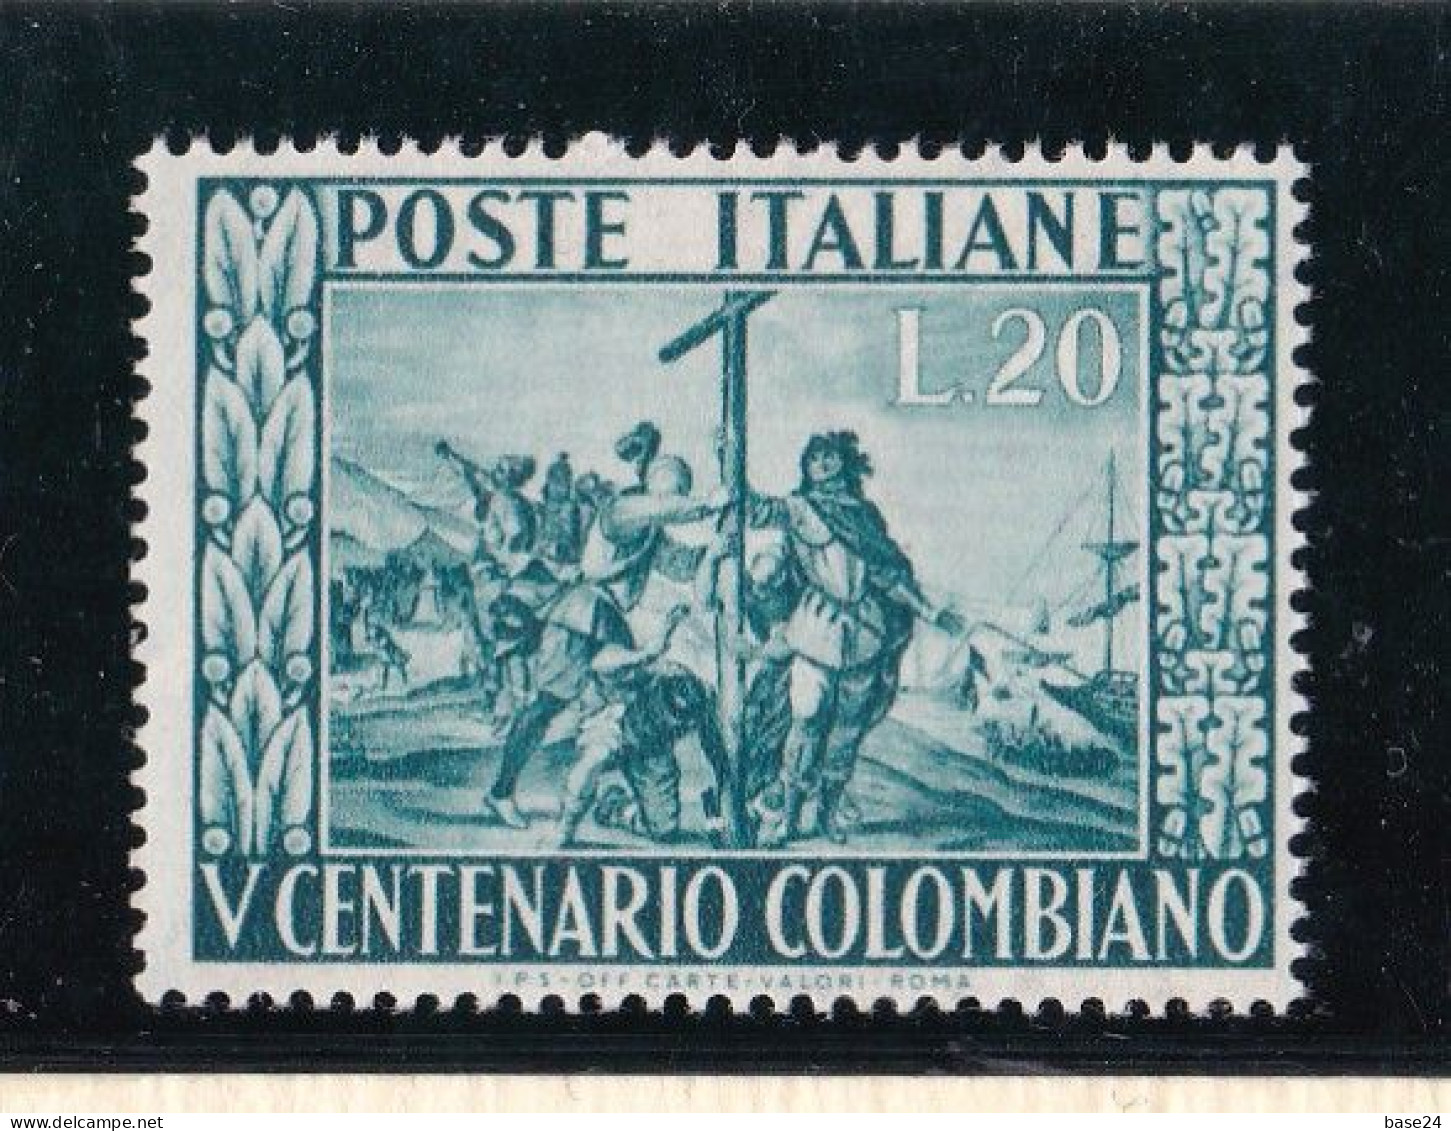 1951 Italia Italy Repubblica CRISTOFORO COLOMBO Serie MNH** SCOPERTA DELL'AMERICA, DISCOVERY OF AMERICA - Christopher Columbus